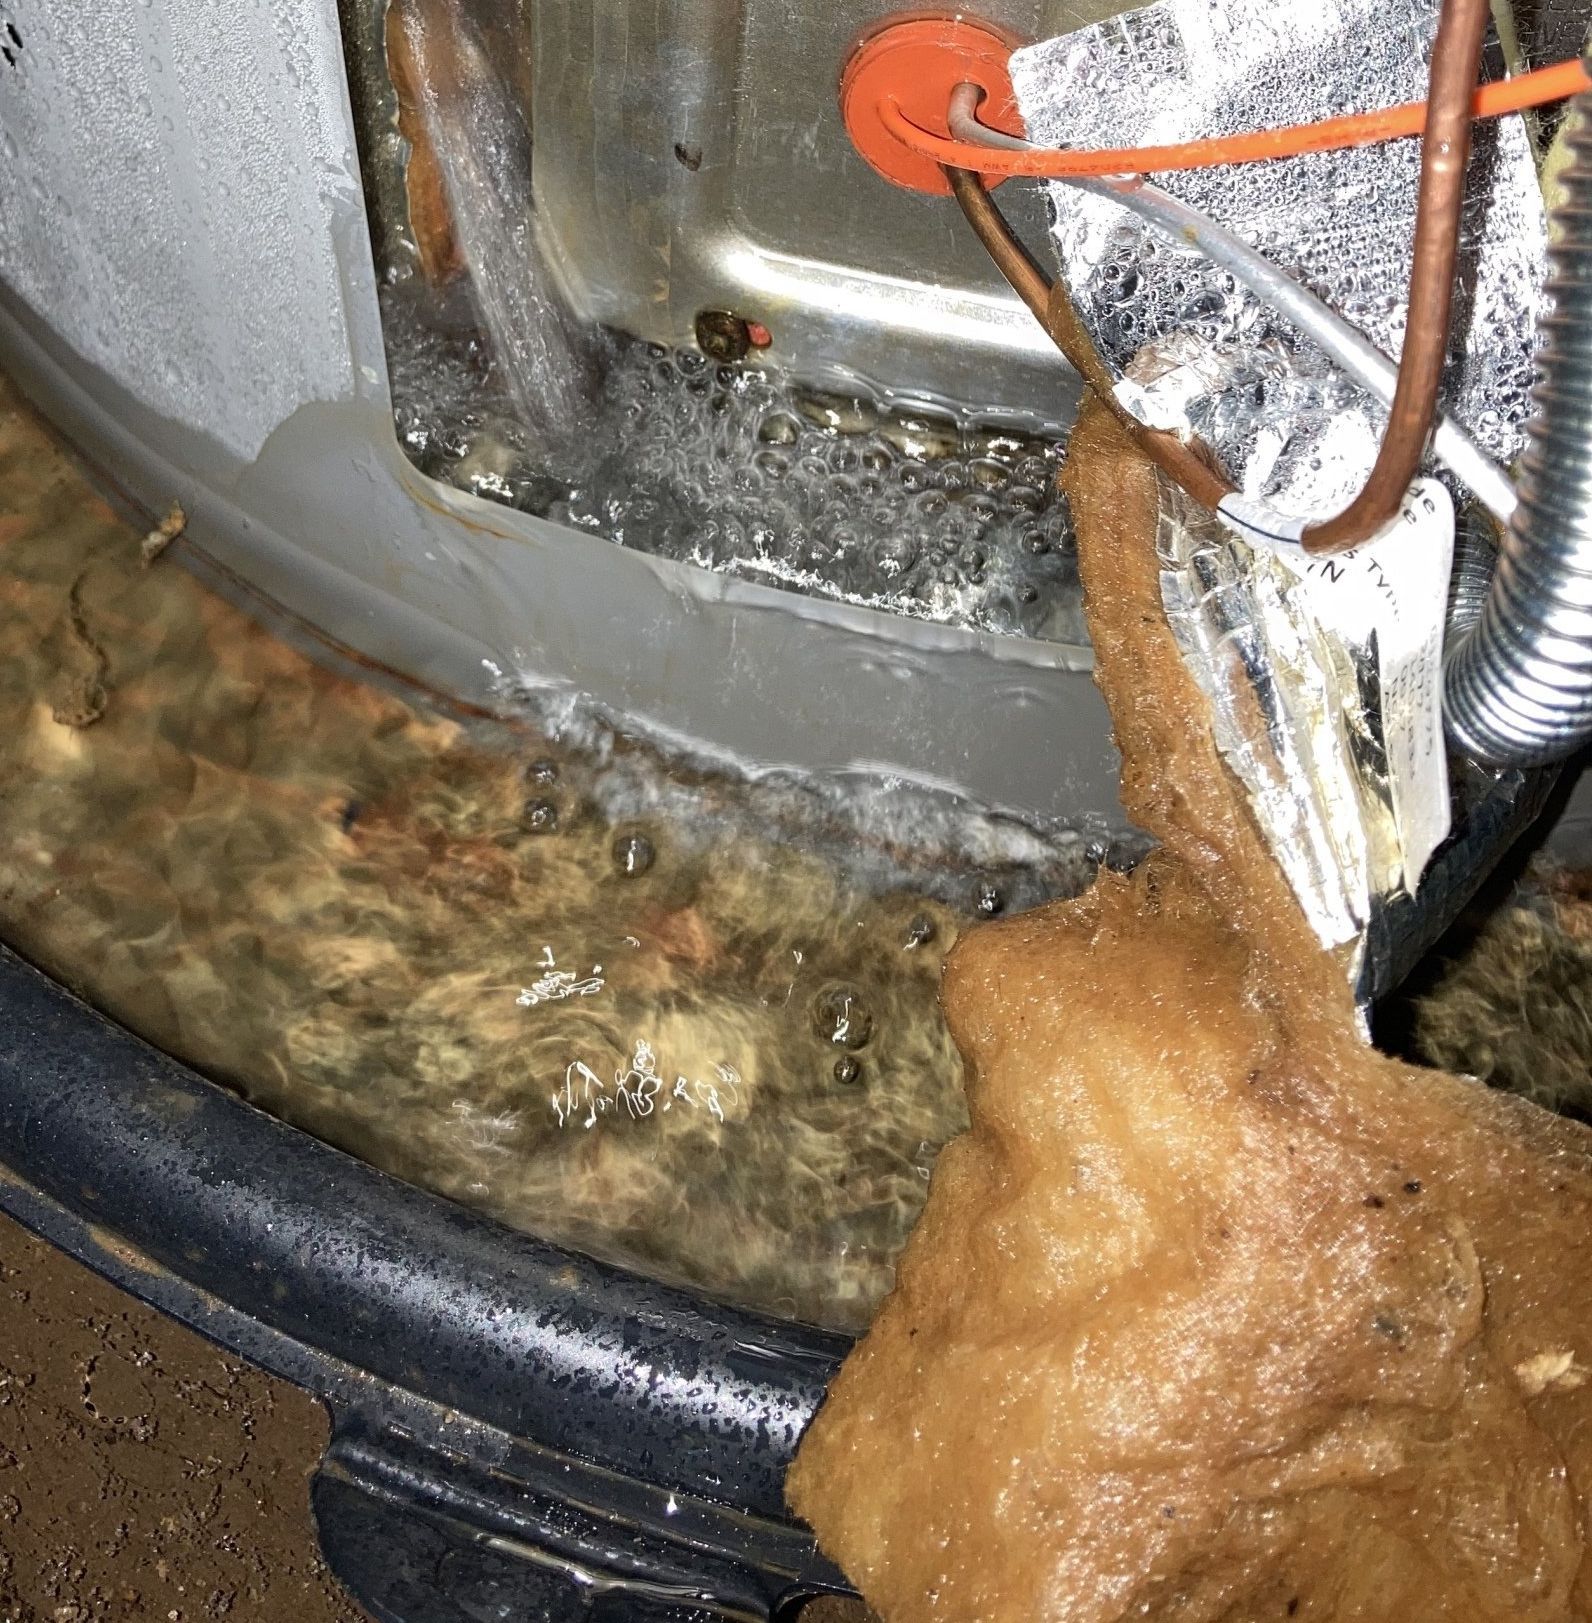 water heater leak